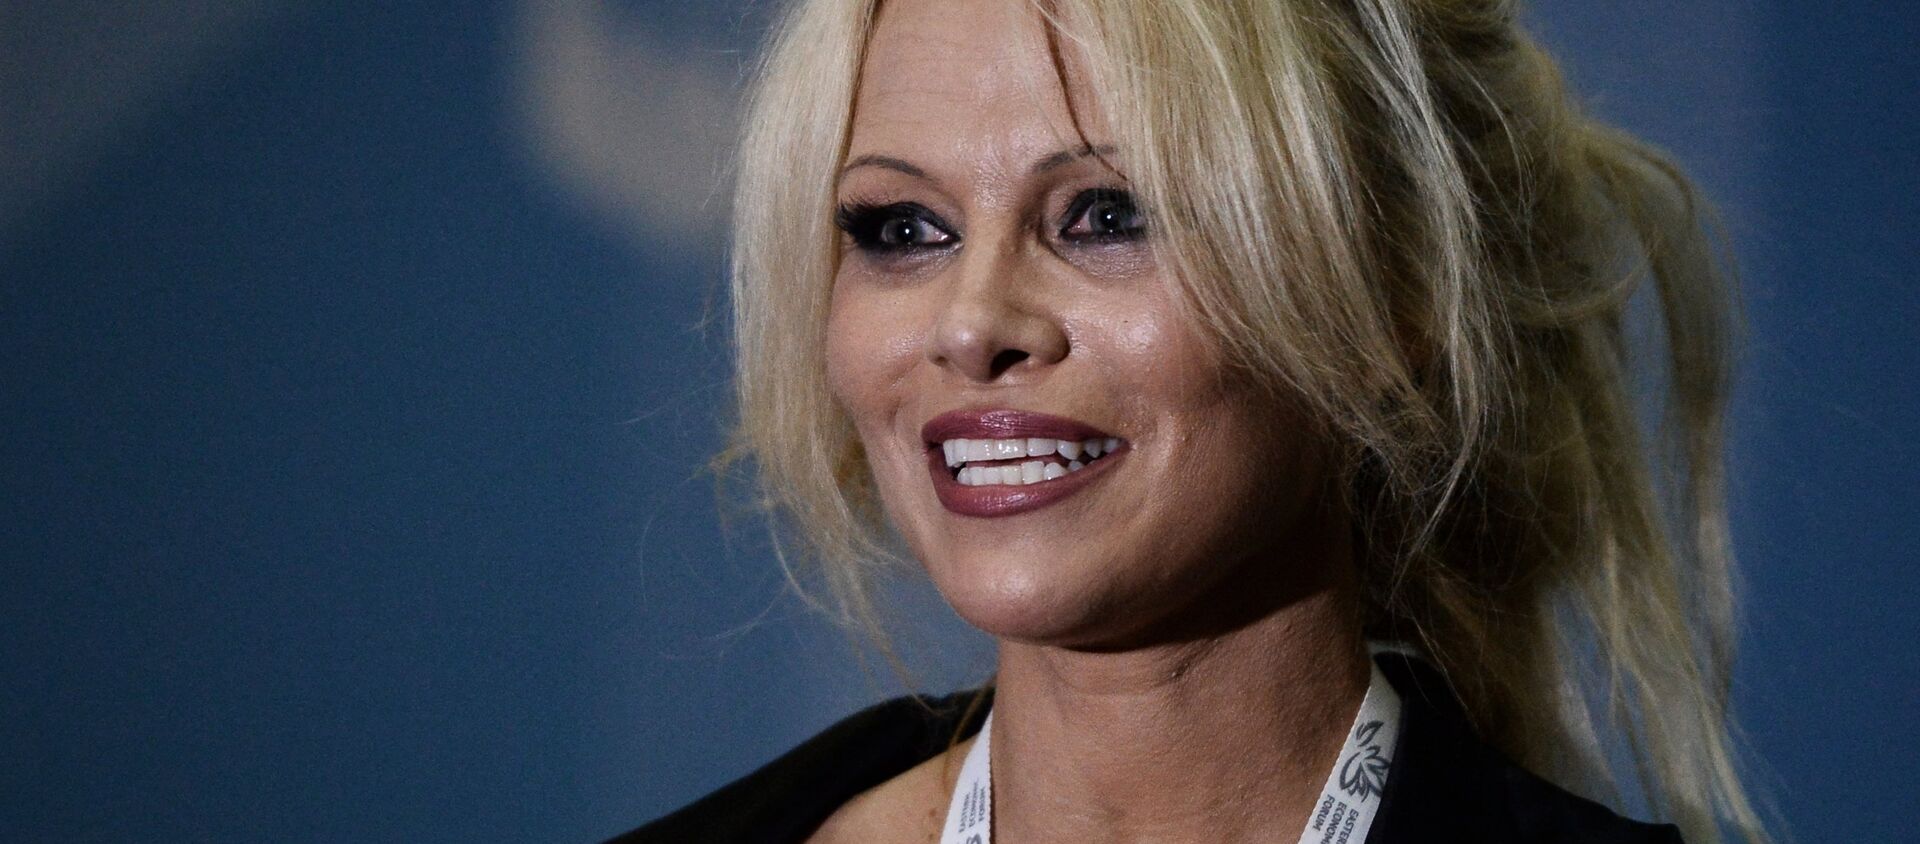 Pamela Anderson - Sputnik Türkiye, 1920, 01.04.2017